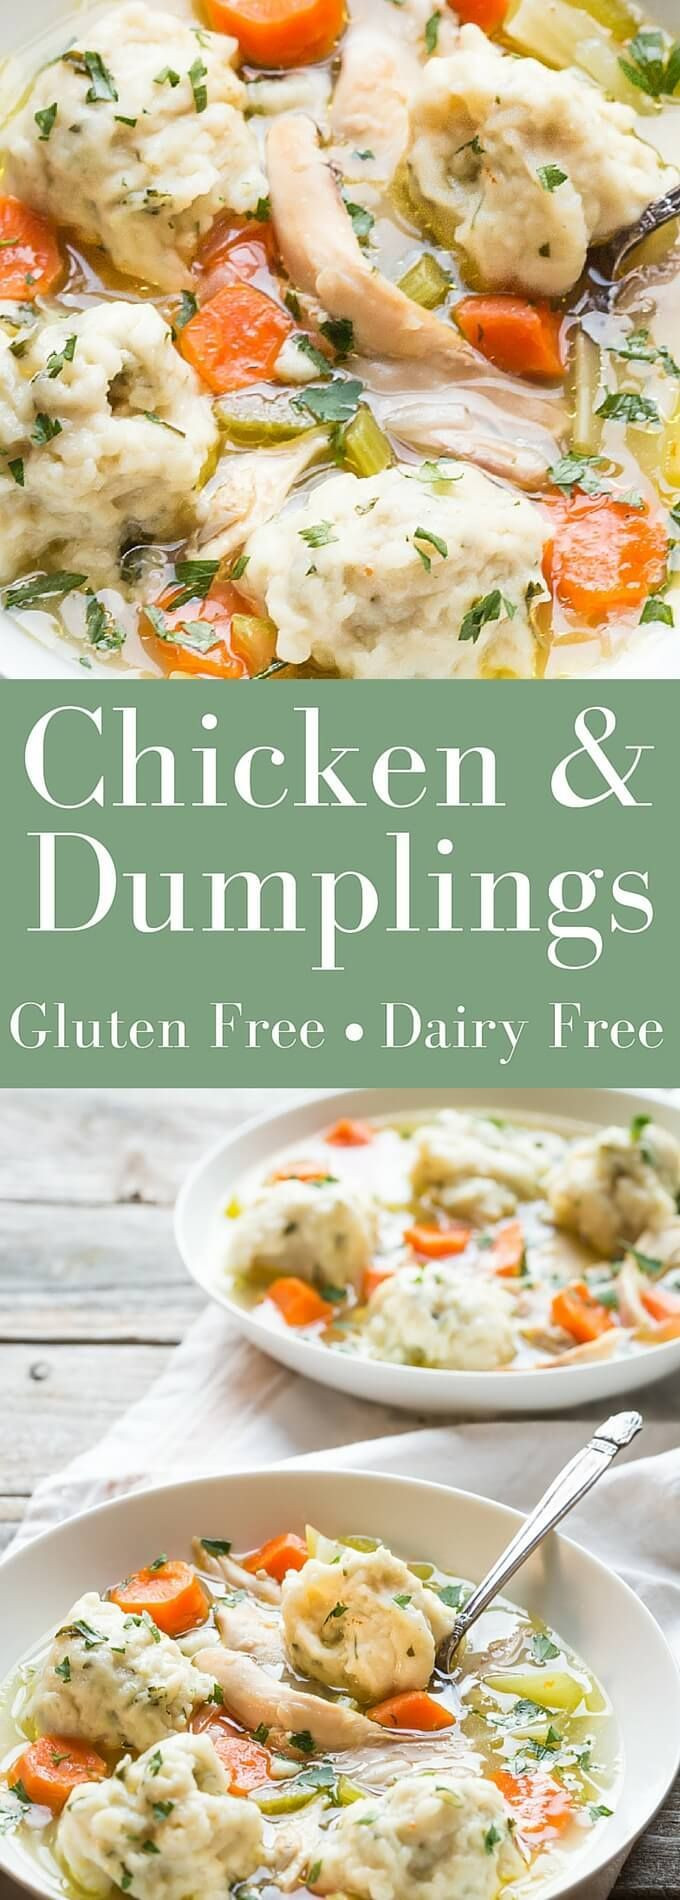 Dumplings Gluten Free
 Best Ever Gluten Free Chicken and Dumplings